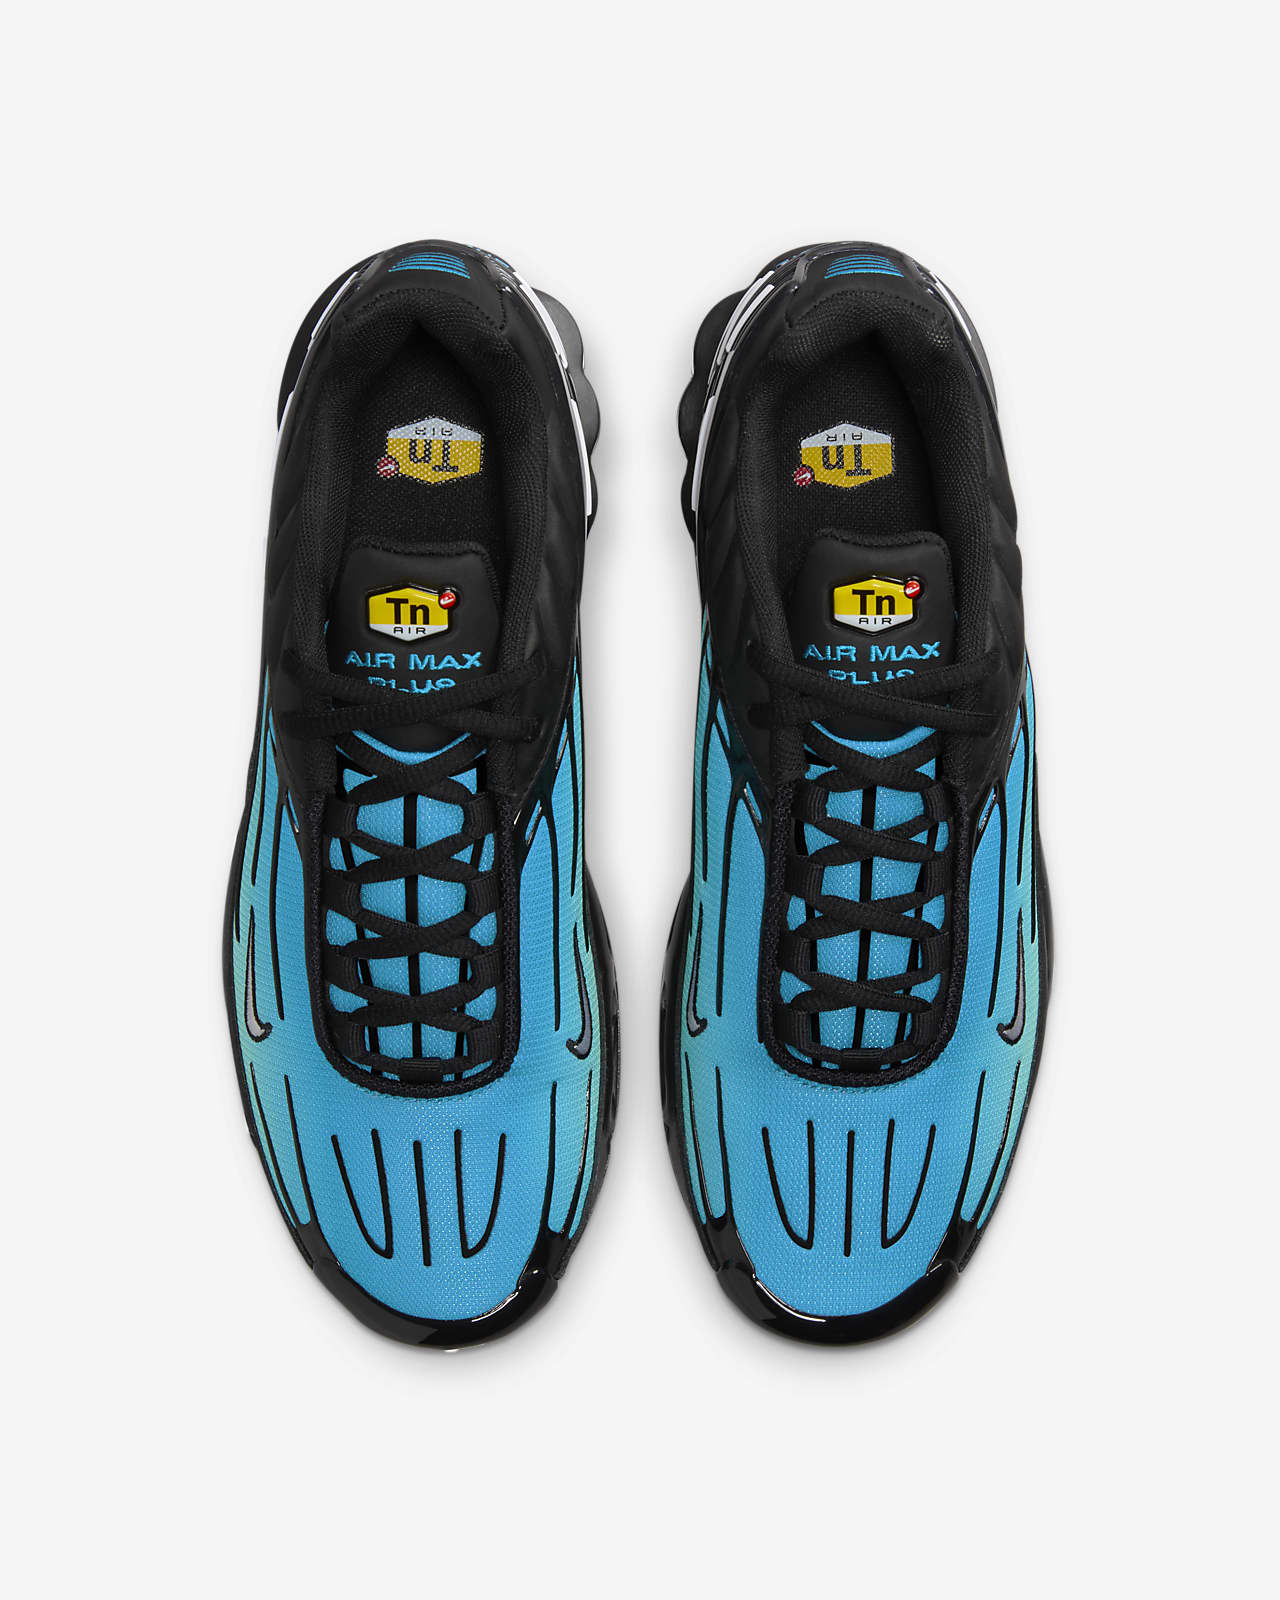 Nike Tn Air Max Plus Sneakers in Blue for Men